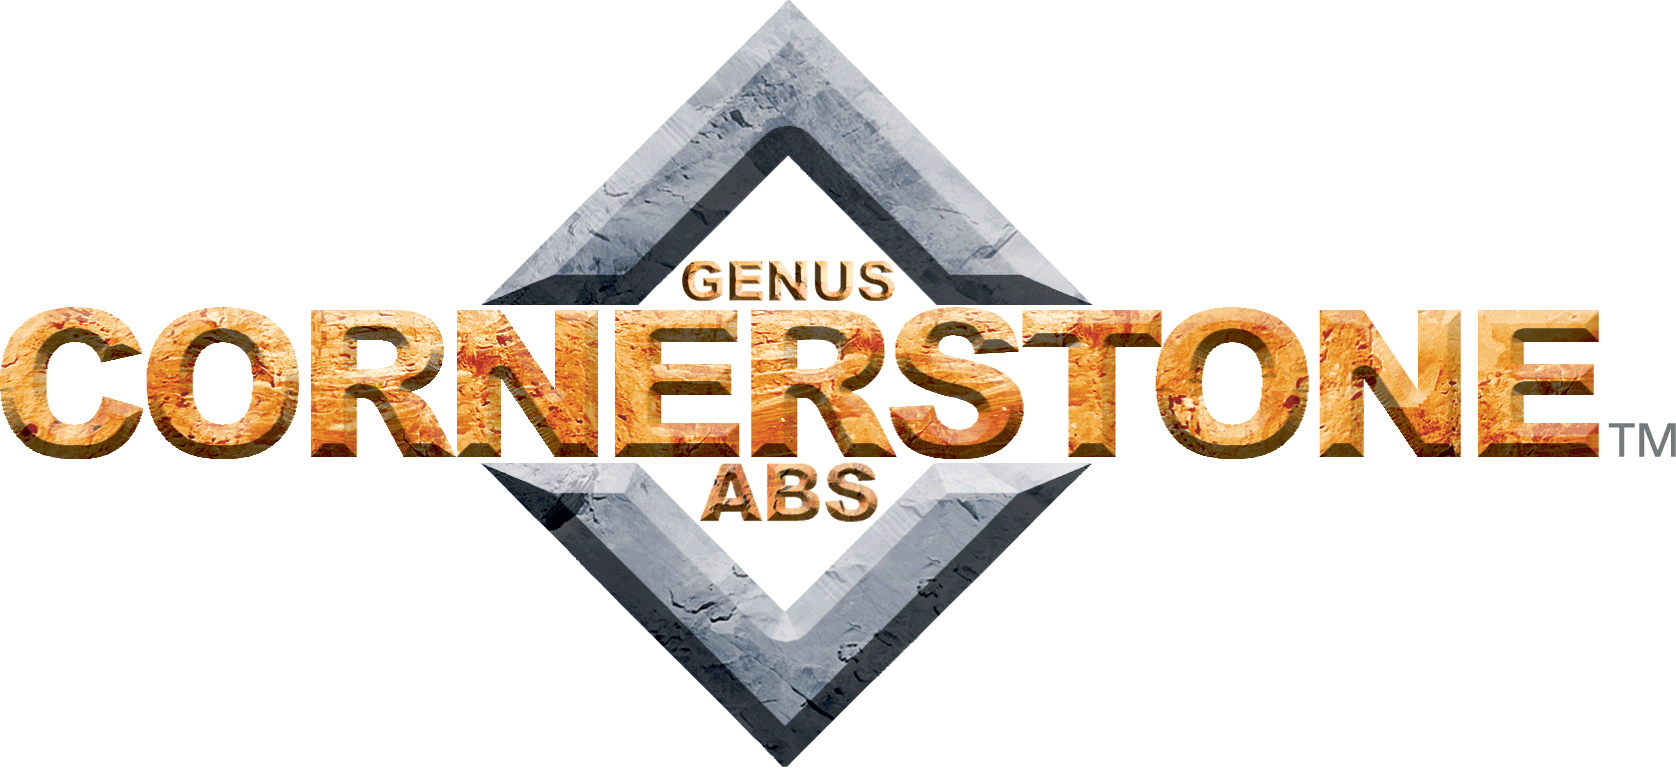 ABS-Cornerstone_Genus